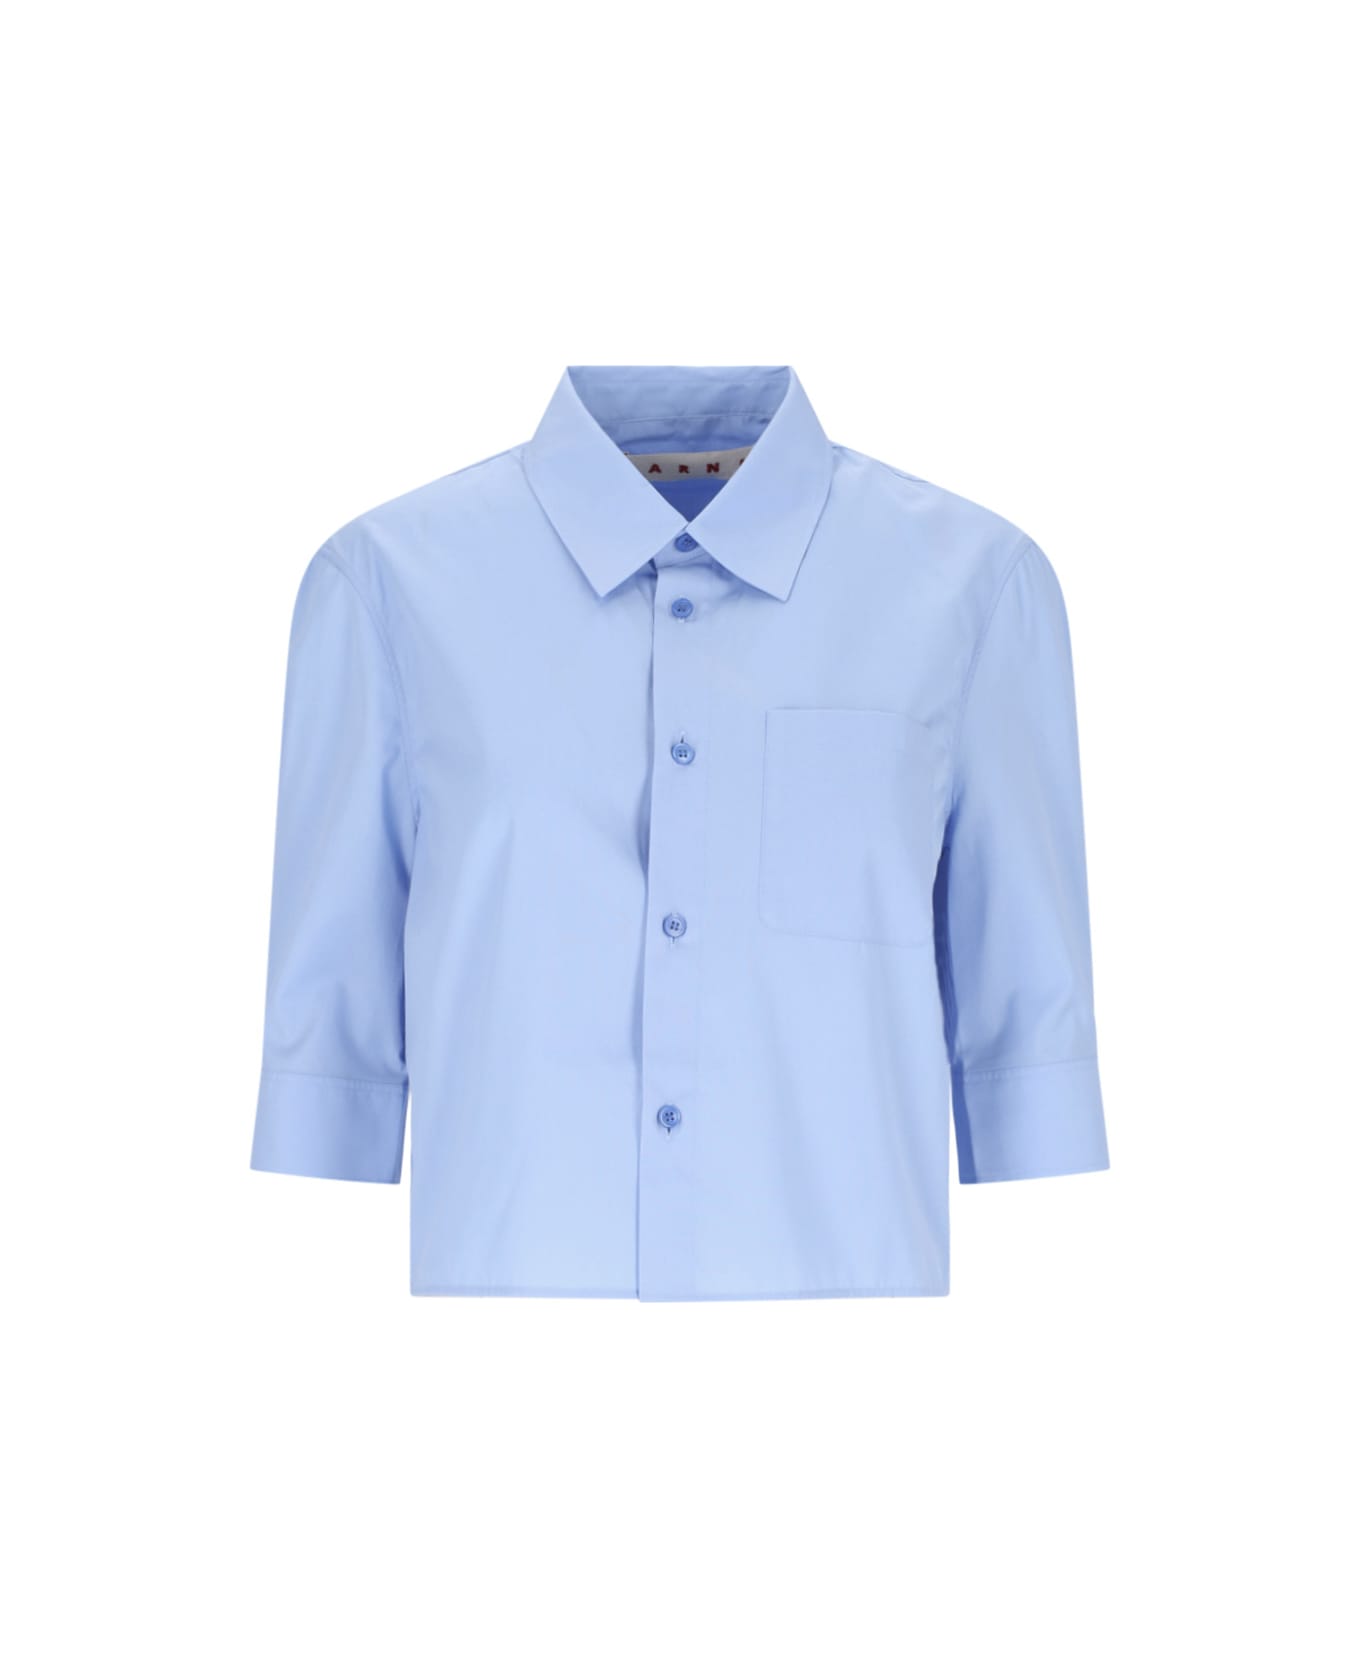 Marni Cropped Shirt - Light Blue